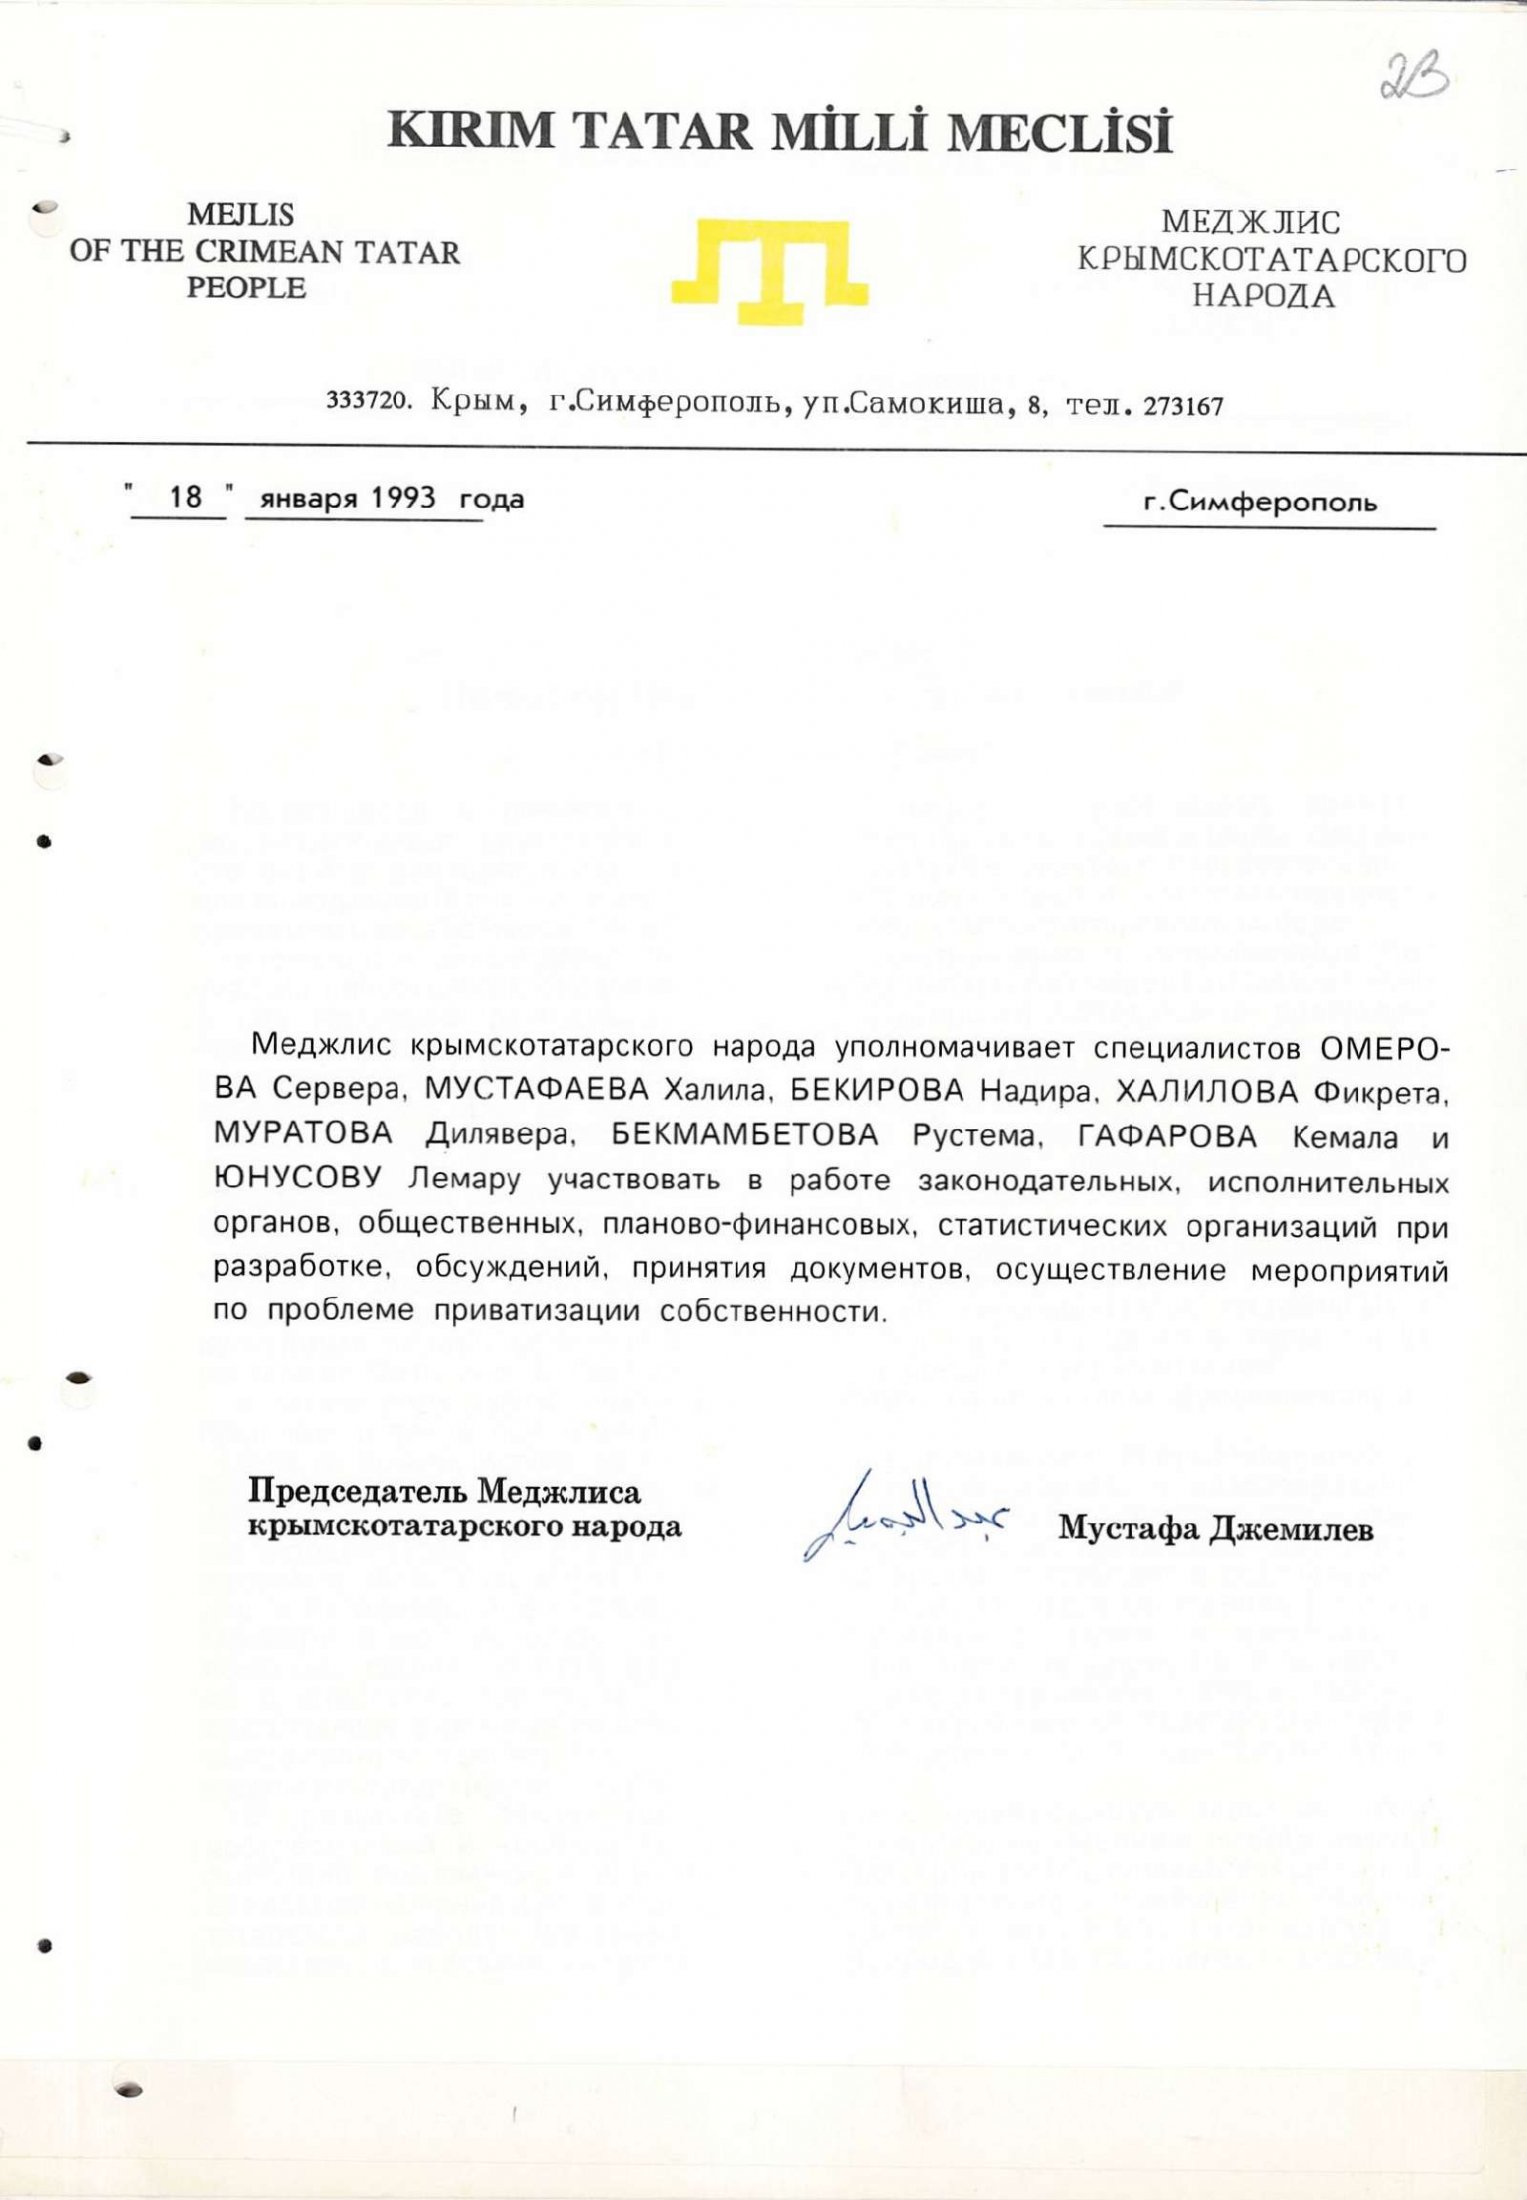 Список рекомендованих осіб від Президії Меджлісу кримськотатарського народу, які братимуть участь у підготовці, прийнятті та реалізації законодавчих та нормативних документів з питань приватизації власності. 18 січня 1993 р. 